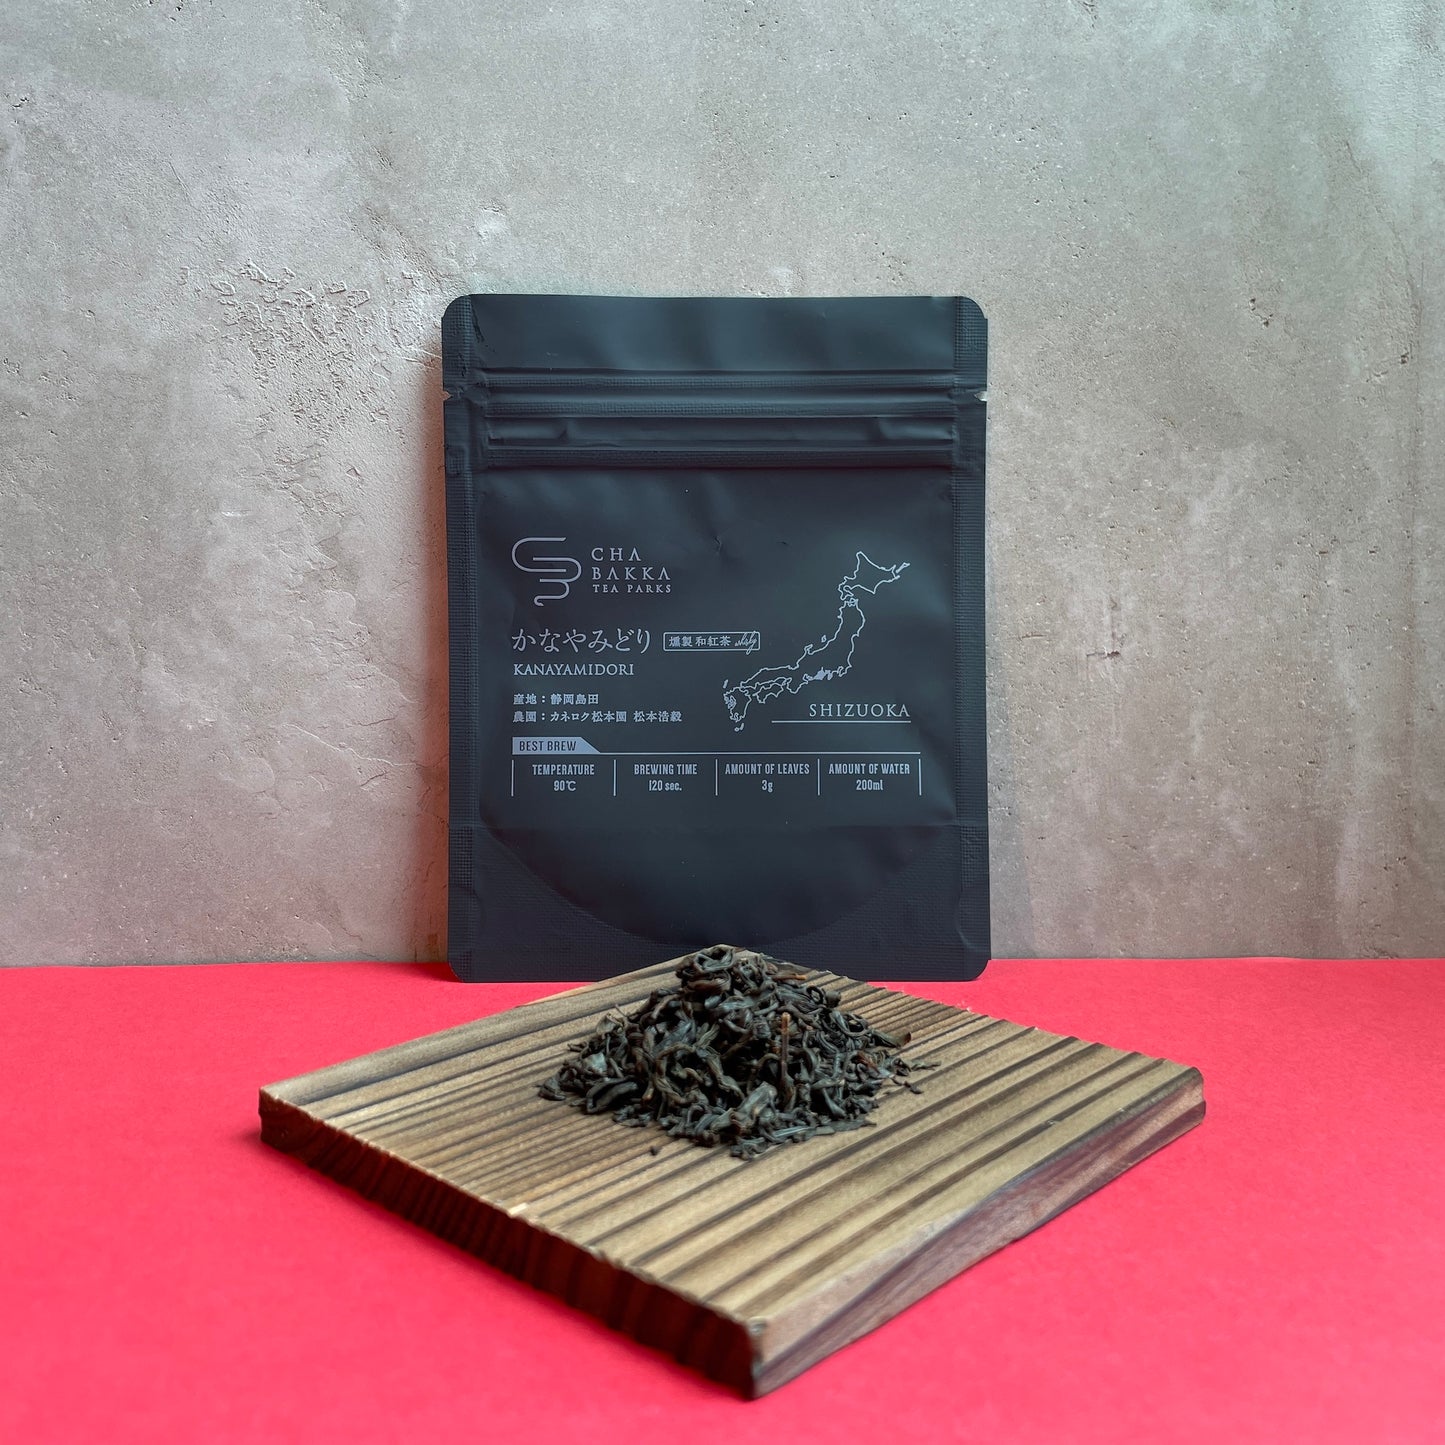 【2023新茶】【冬ギフトおすすめ】かなやみどり -静岡-燻製和紅茶- 選べる2タイプ